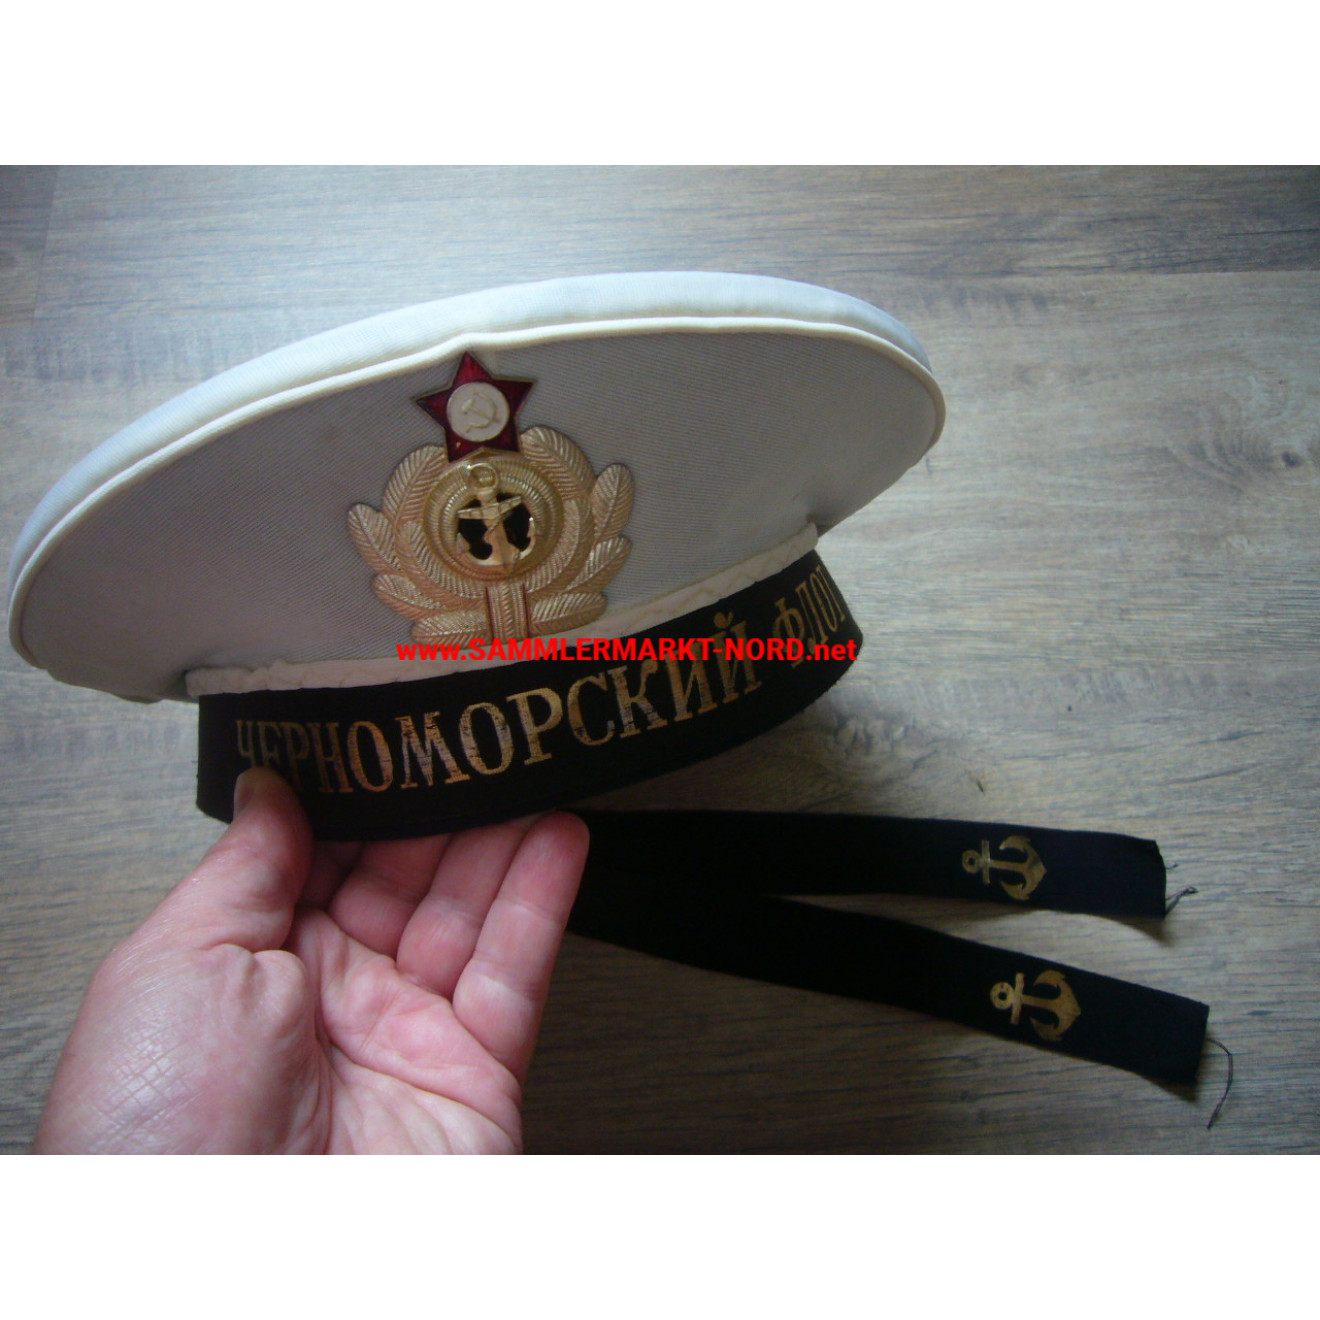 Russia - Russian Navy - Sailor Cap